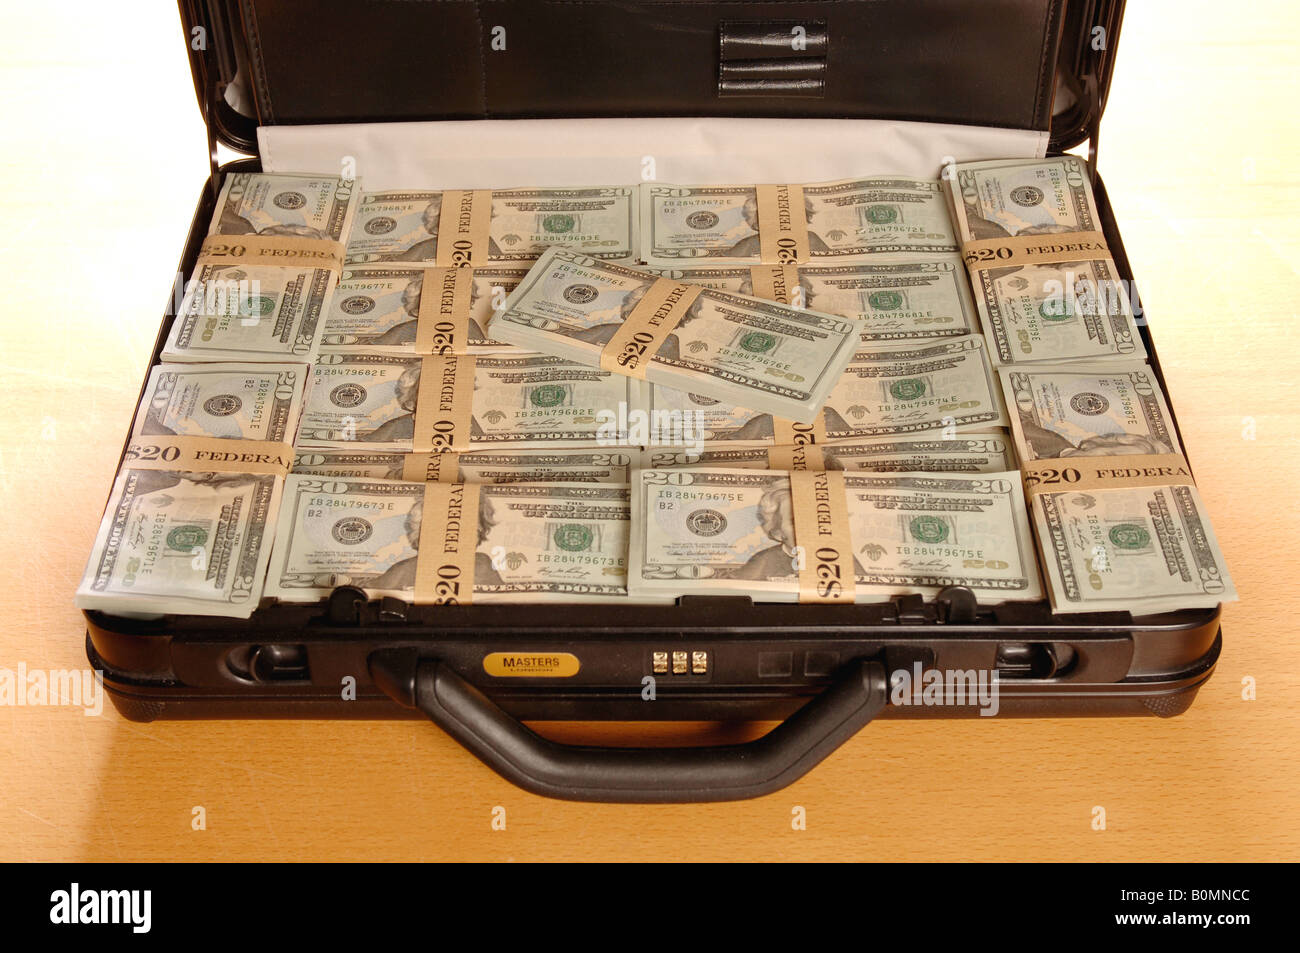 ein Koffer voller US-Dollar Geld Stockfotografie - Alamy